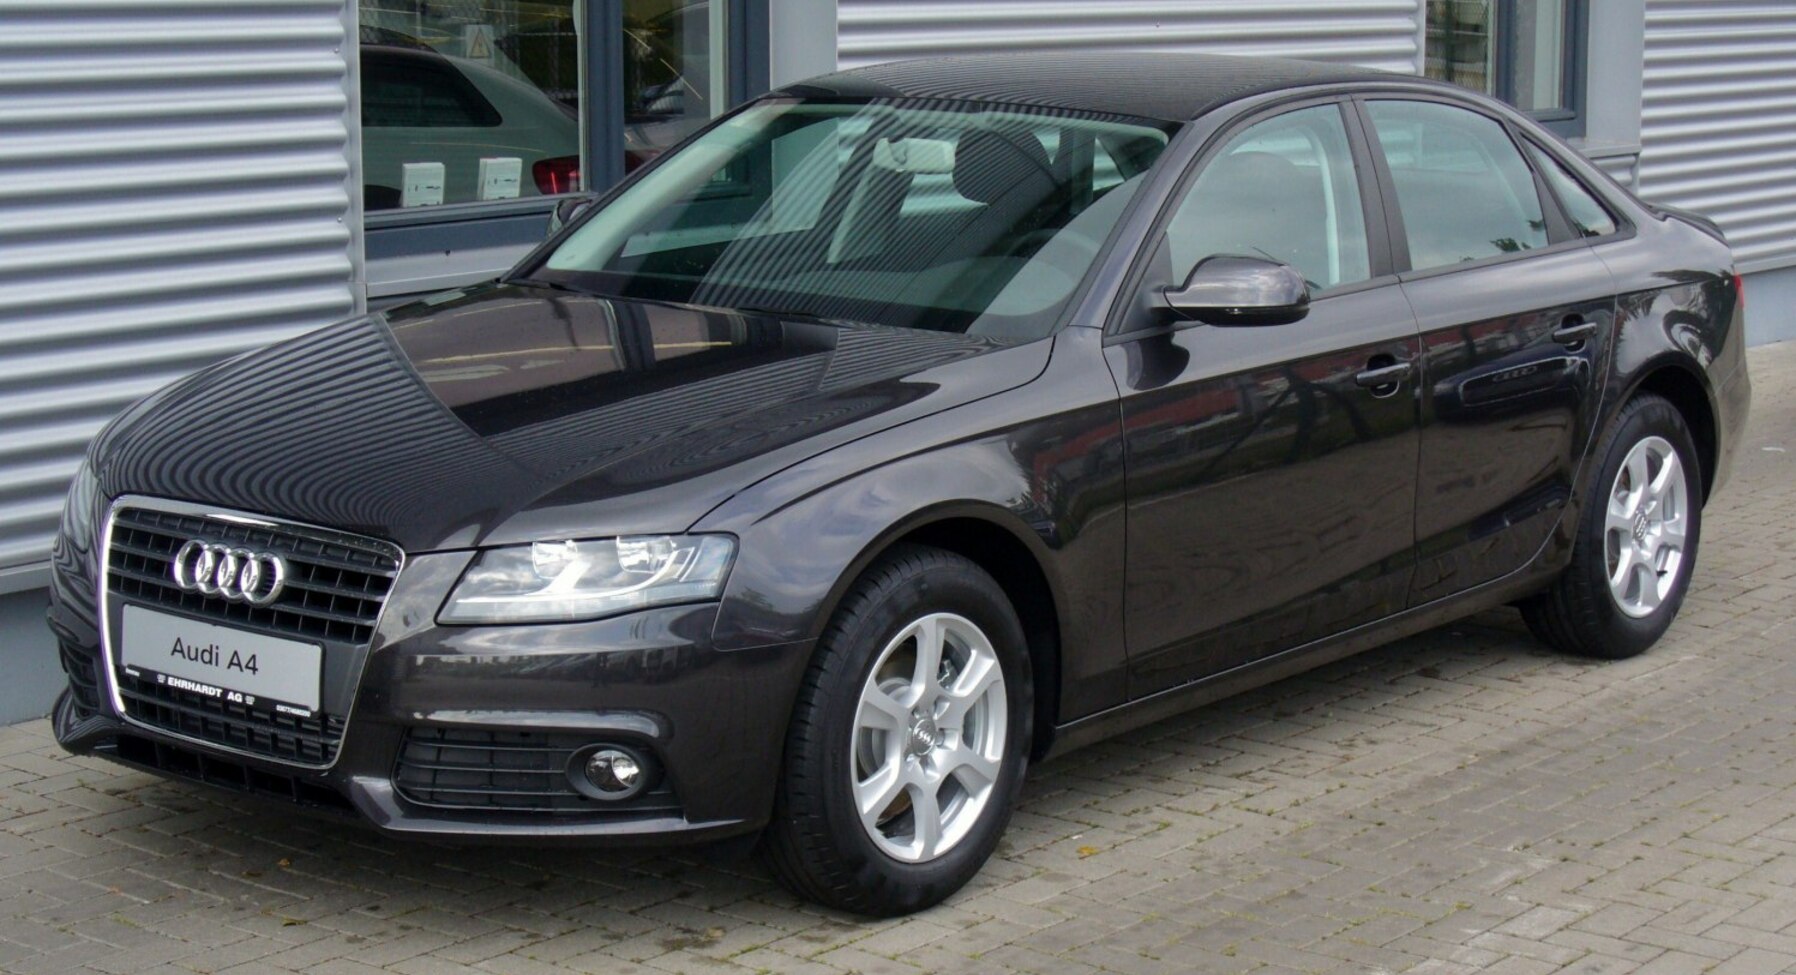 Audi A4 (B8 8K) 3.2 FSI V6 (265 Hp) quattro 2007, 2008, 2009, 2010, 2011 